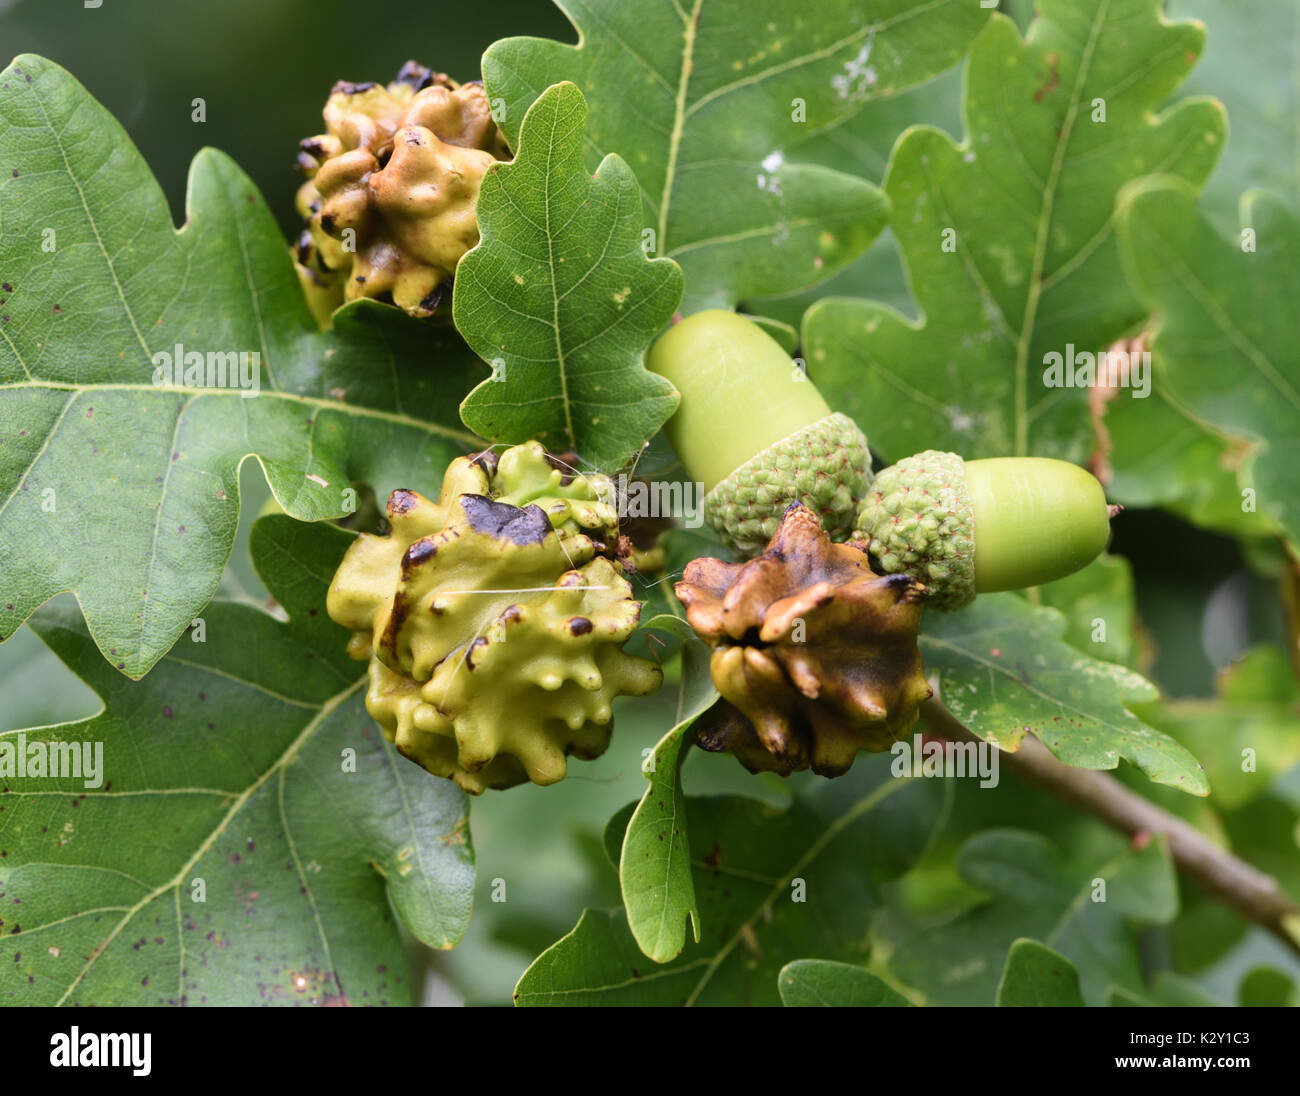 Knopper galles sur les glands d'un chêne pédonculé (Quercus robur). Ces galles sont causés par le gall wasp Andricus quercuscalicis. Bedgebury Forêt Banque D'Images